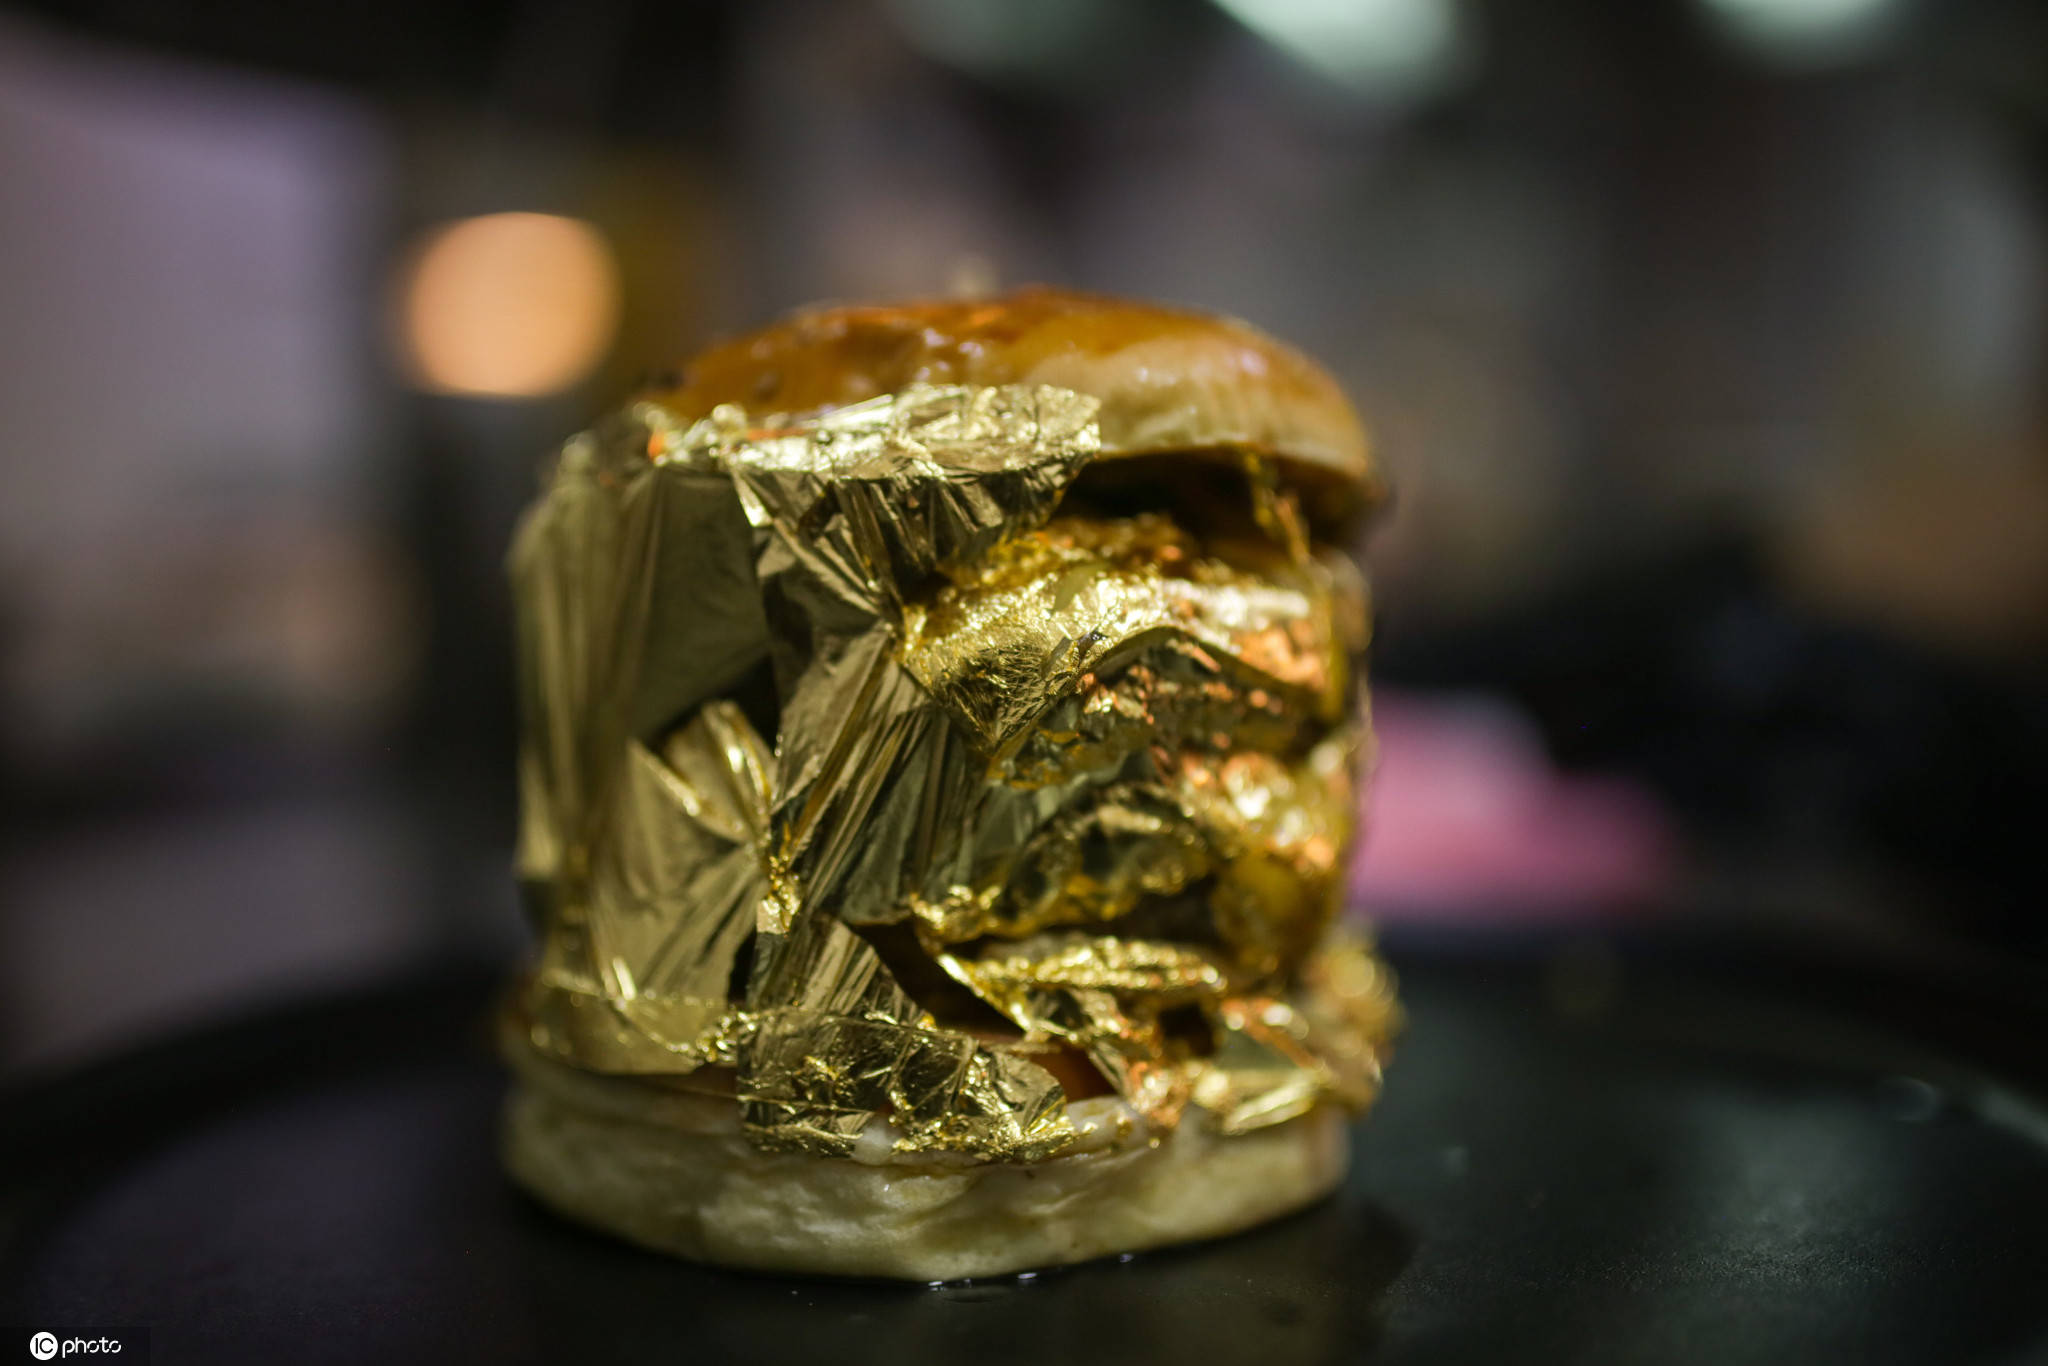 该汉堡包裹上可食用的24k黄金,金光闪.